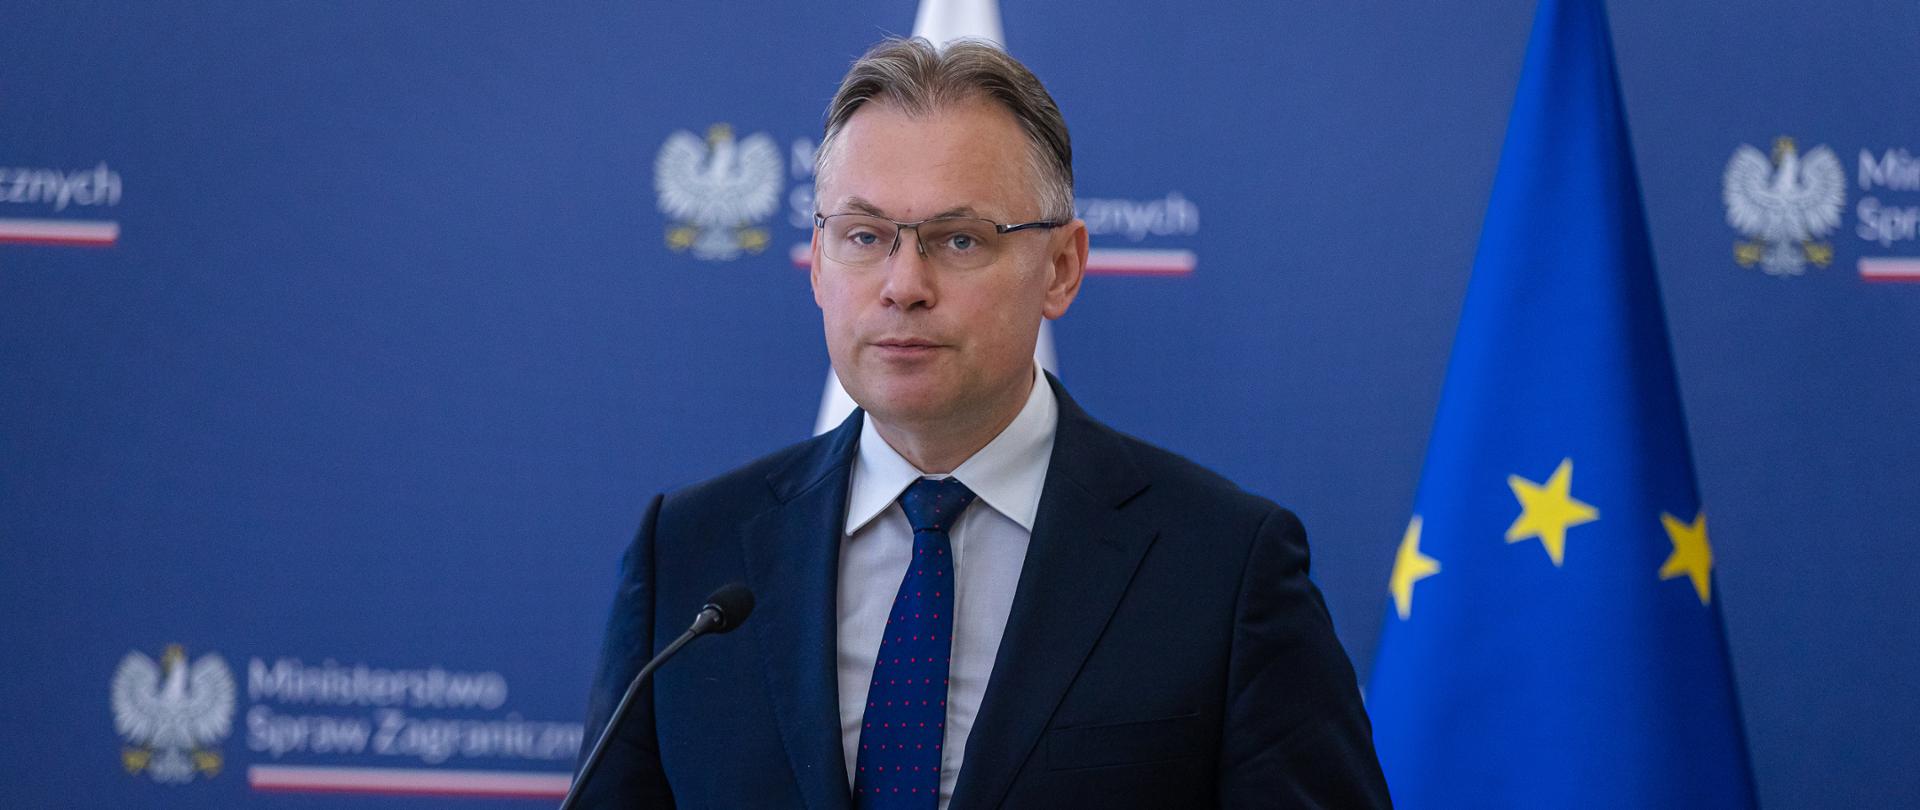 Secretary of State Arkadiusz Mularczyk